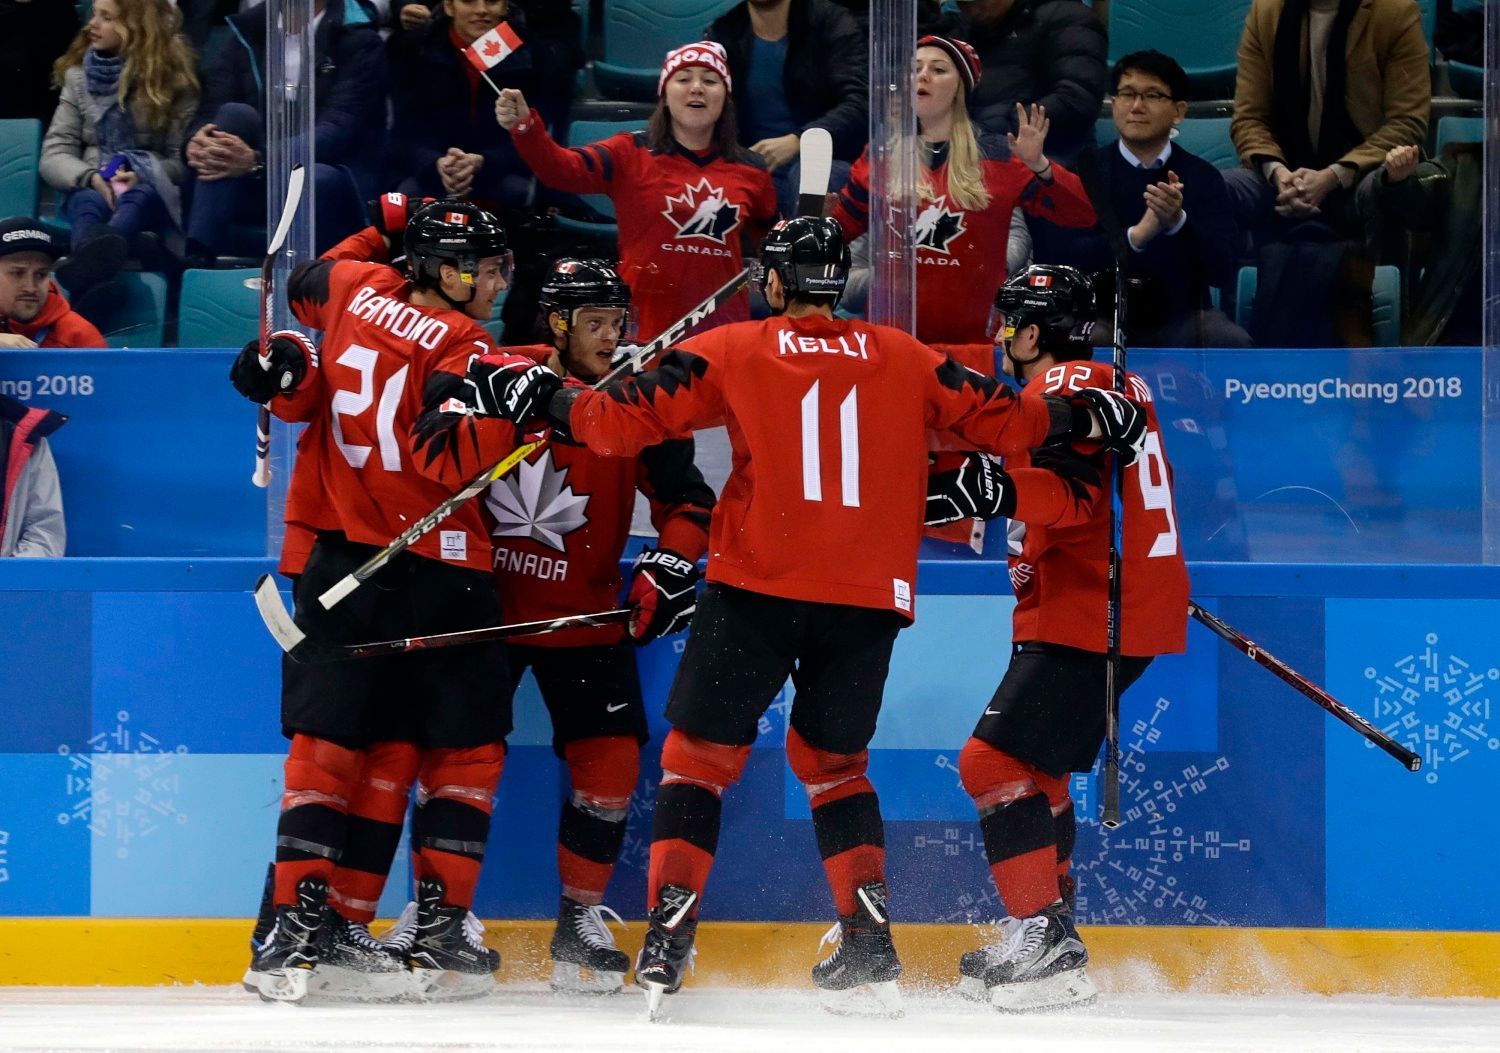 Kanaďané slaví gól v semifinále Kanada - Německo na ZOH 2018